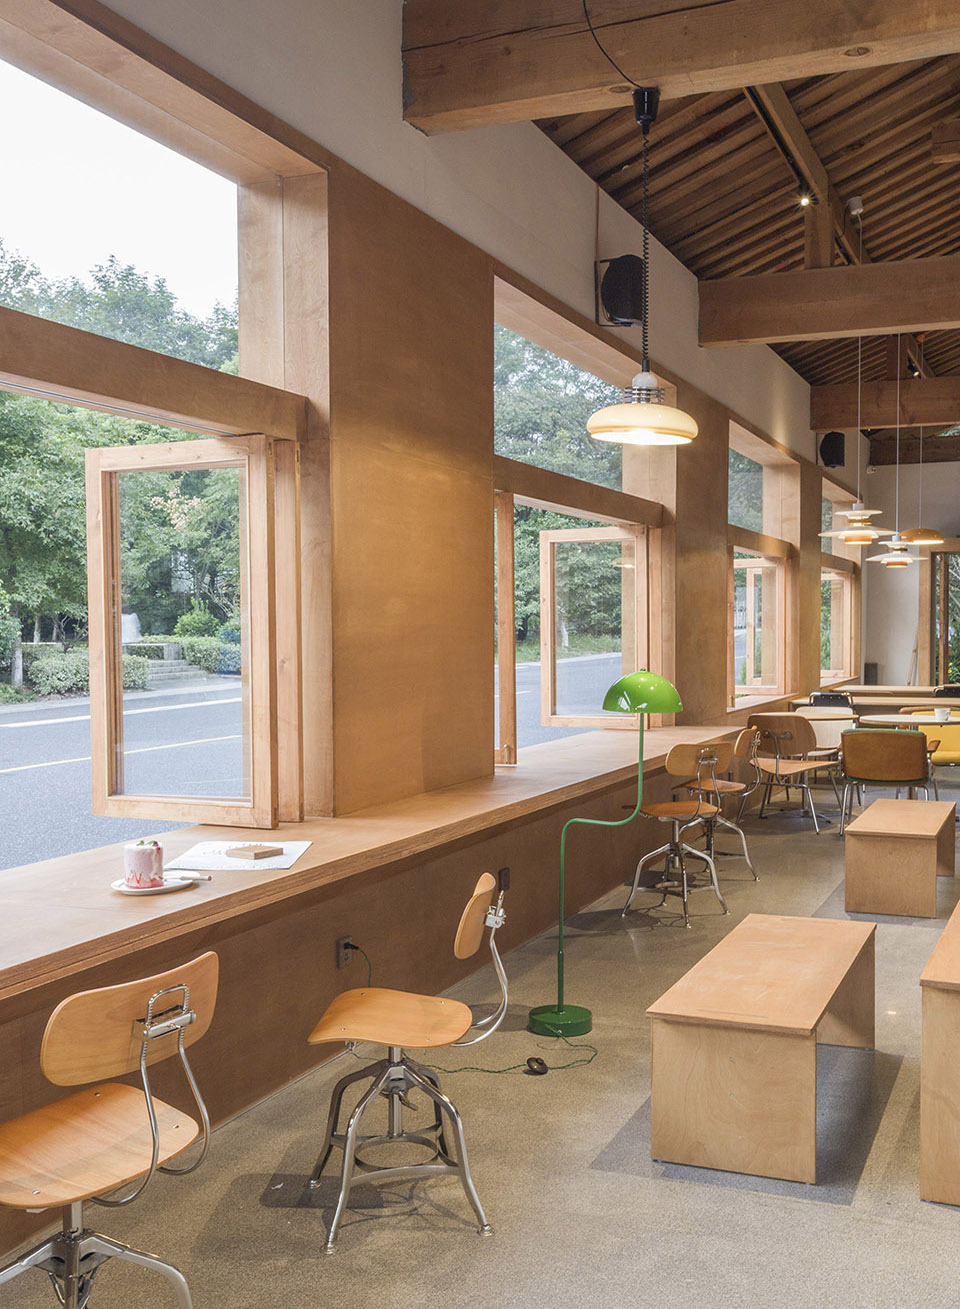 咖啡厅设计案例,咖啡厅设计方案,咖啡店设计,咖啡馆设计,森系咖啡厅设计,开放式咖啡厅设计,杭州,33 COFFEE,壹山设计